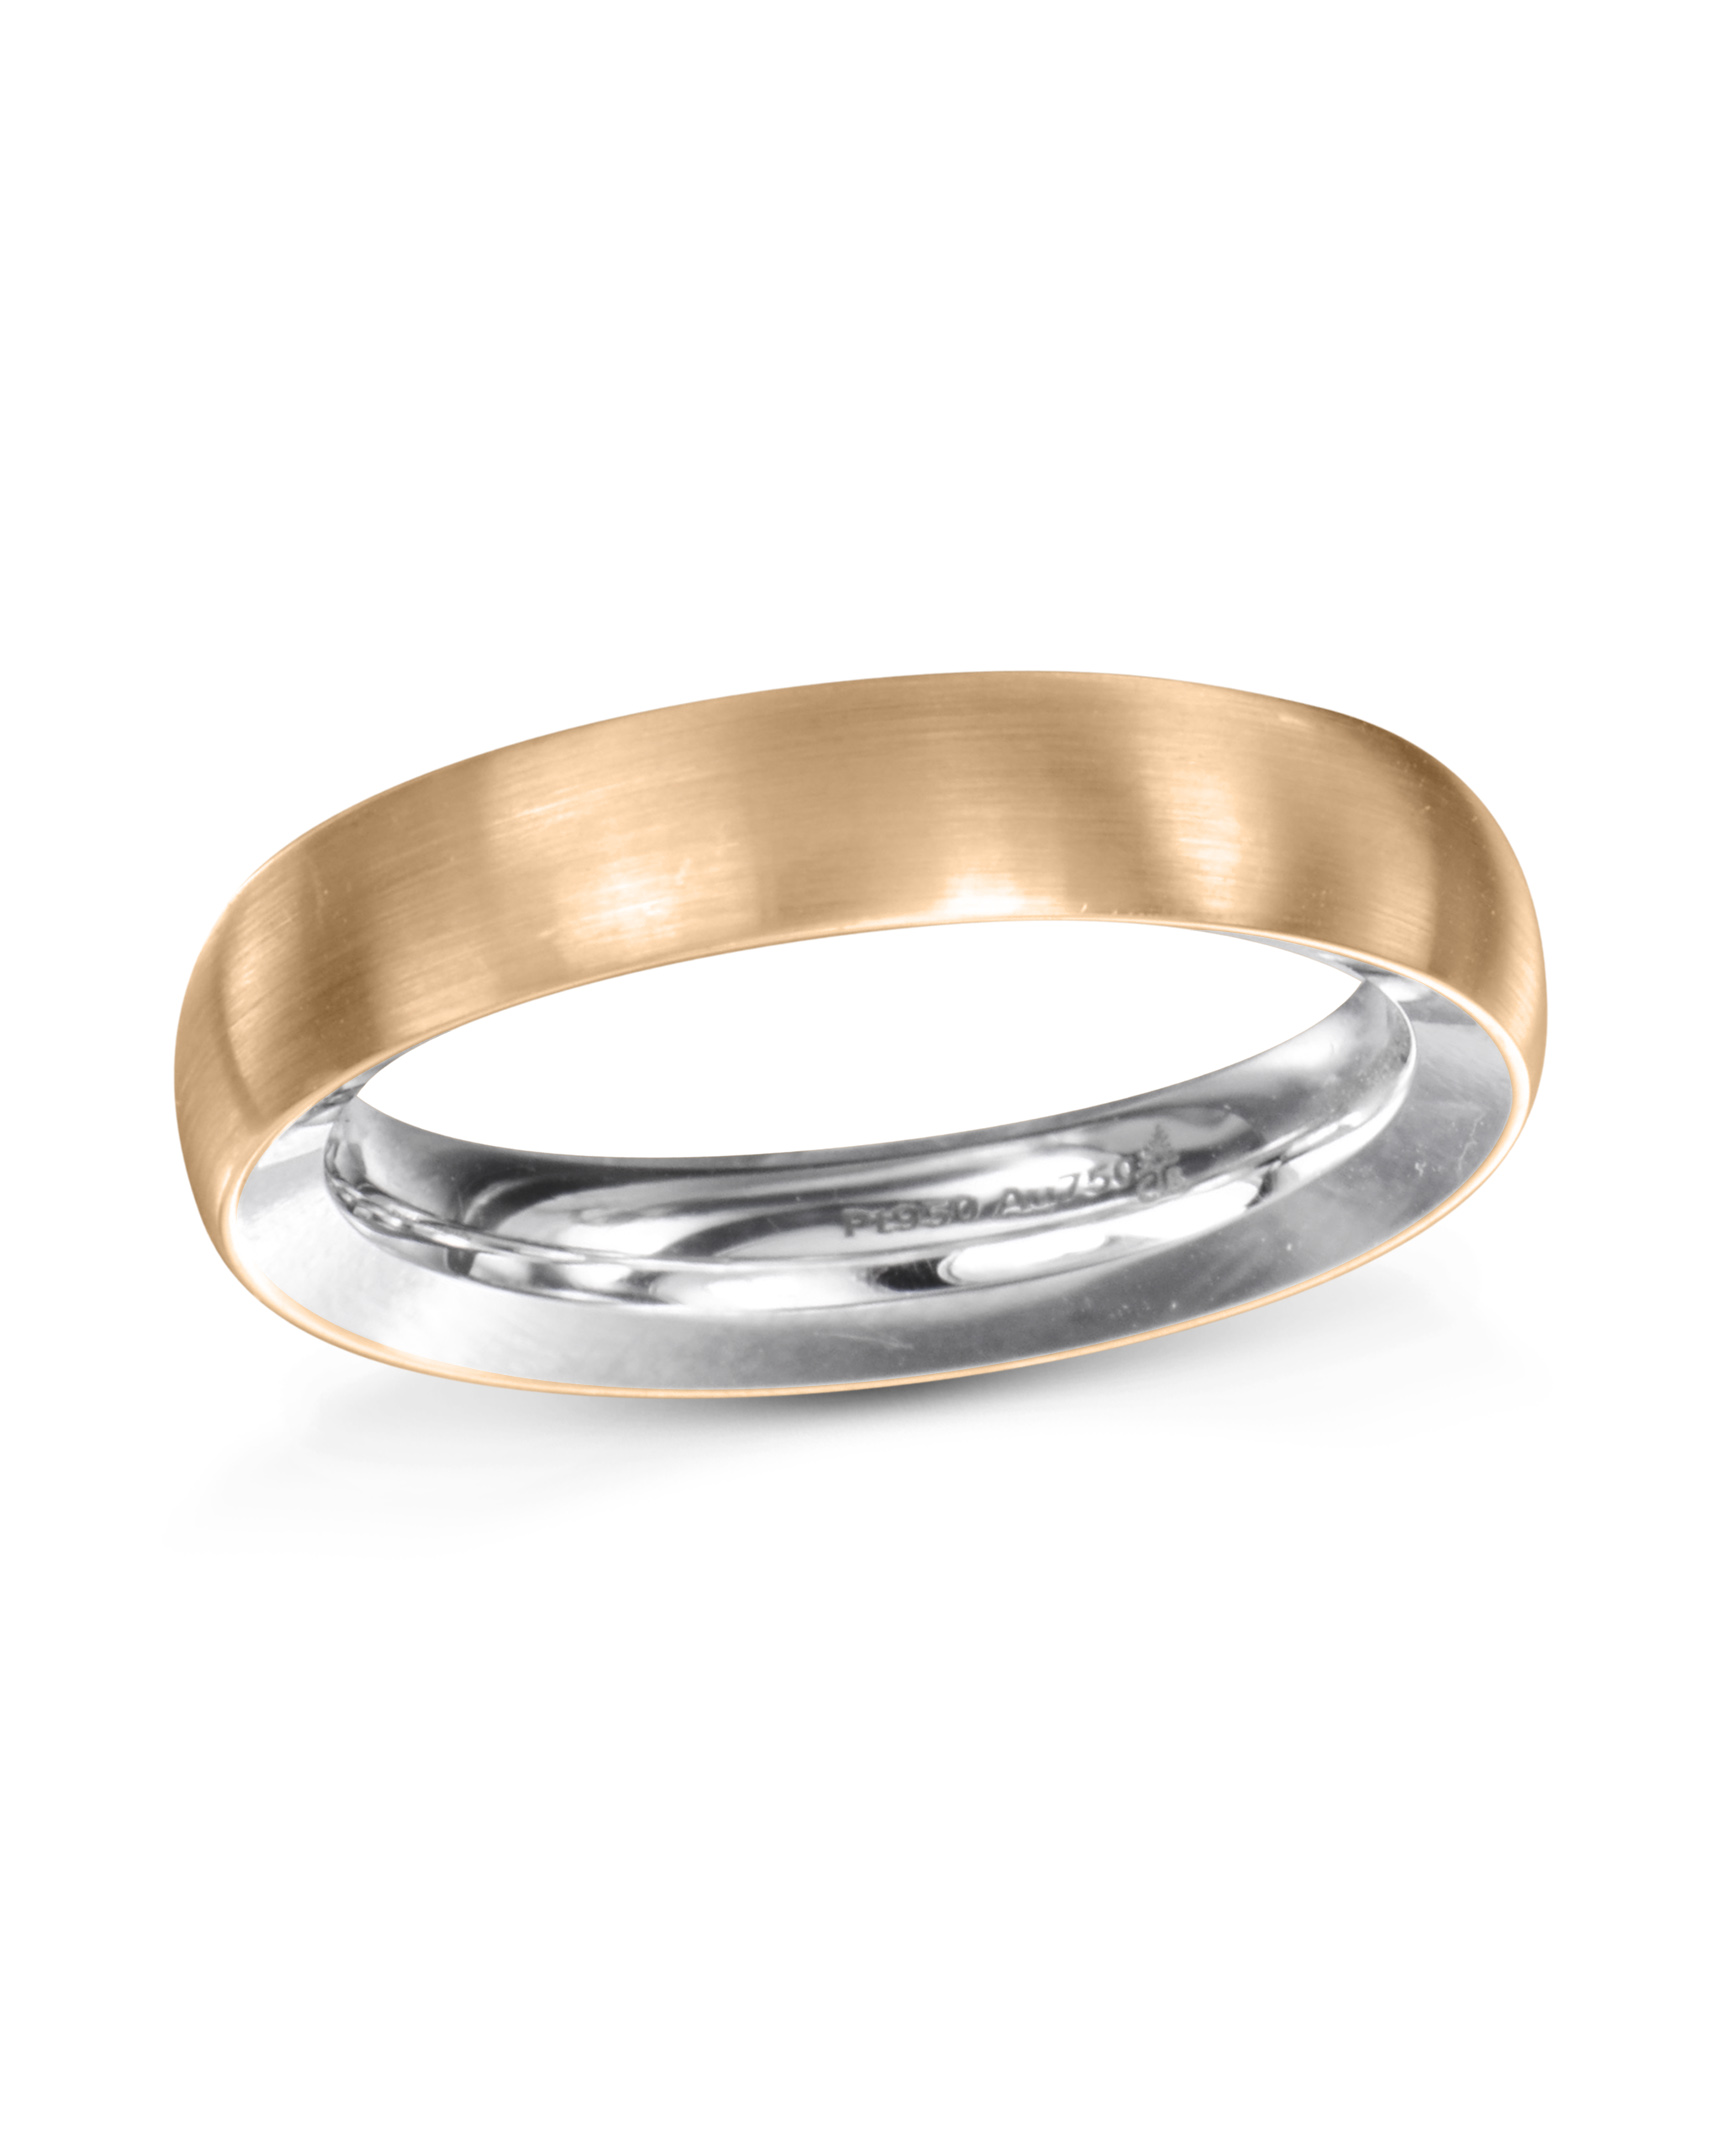 MALABAR GOLD & DIAMONDS KRJSL01990V_T_VVS-EF PT950 Diamond Platinum ring  Price in India - Buy MALABAR GOLD & DIAMONDS KRJSL01990V_T_VVS-EF PT950  Diamond Platinum ring online at Flipkart.com